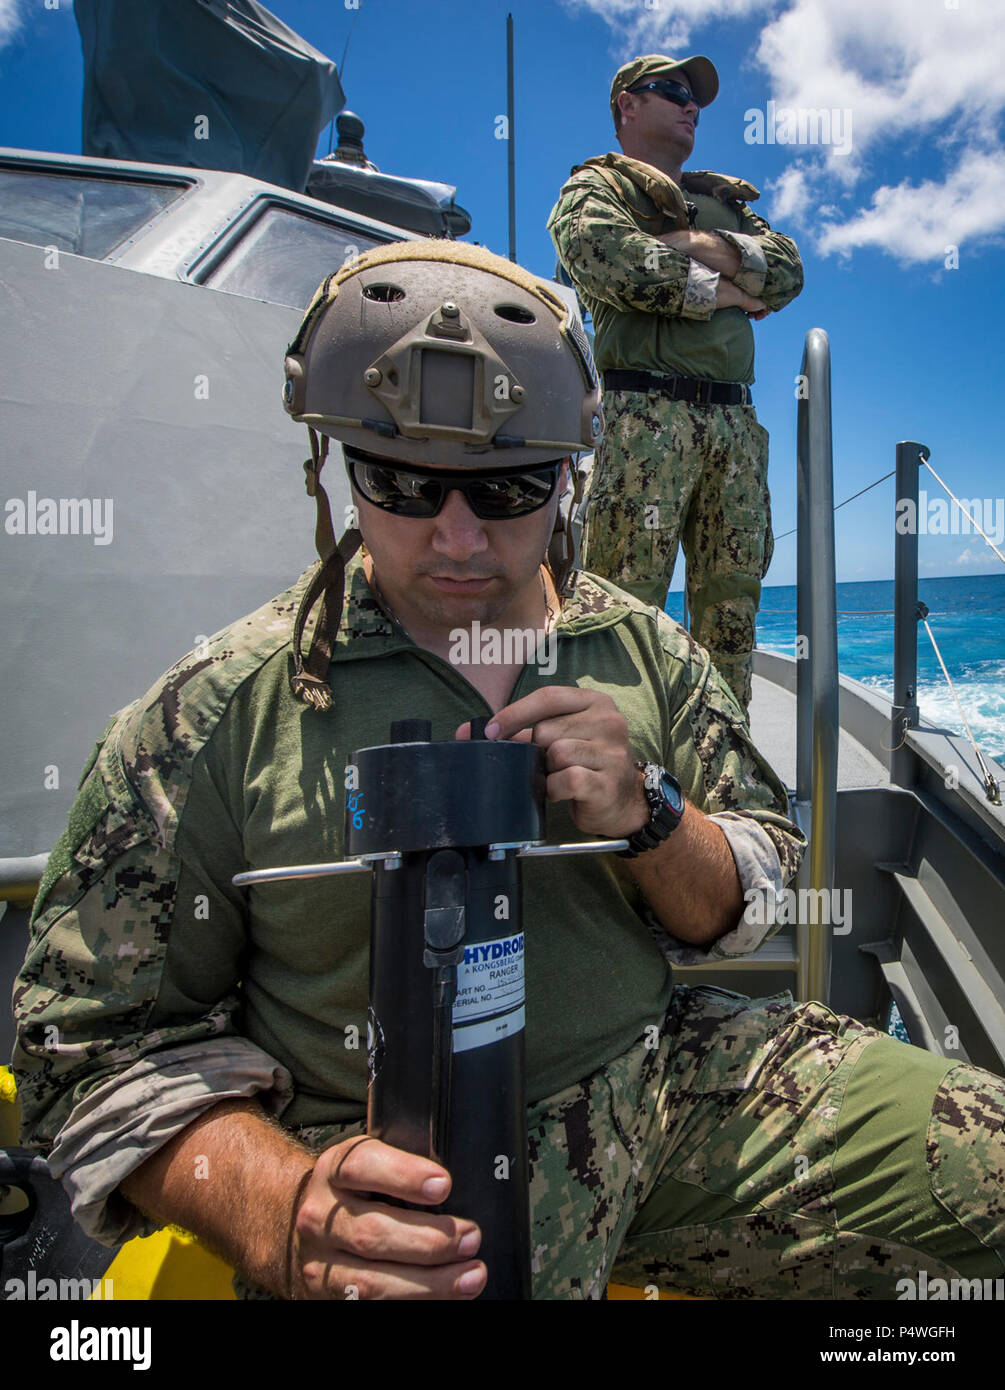 Ein Seemann, Explosive Ordnance Mobile Abfallbehälter 5 (EODMU5) Zug 142 zugewiesen verwendet einen akustischen Signalgeber an Bord ein Patrouillenboot Coastal Riverine Gruppe 1 Ablösung Guam MK VI, Status-Updates von ein unbemanntes Unterwasserfahrzeug vor der Küste von Saipan 9. Mai 2017 erhalten. EODMU5 testet derzeit seine Fähigkeit, Vermögen von verschiedenen Plattformen, einschließlich Hubschrauber bereitstellen und Patrouillenbooten, um seine adaptive Interoperabilität zu erhöhen. EODMU5 führt mine Gegenmaßnahmen, improvisierte explosive Gerätevorgänge, macht sicherere explosive Gefahren und entwaffnet Unterwasser Sprengstoffe wie Stockfoto